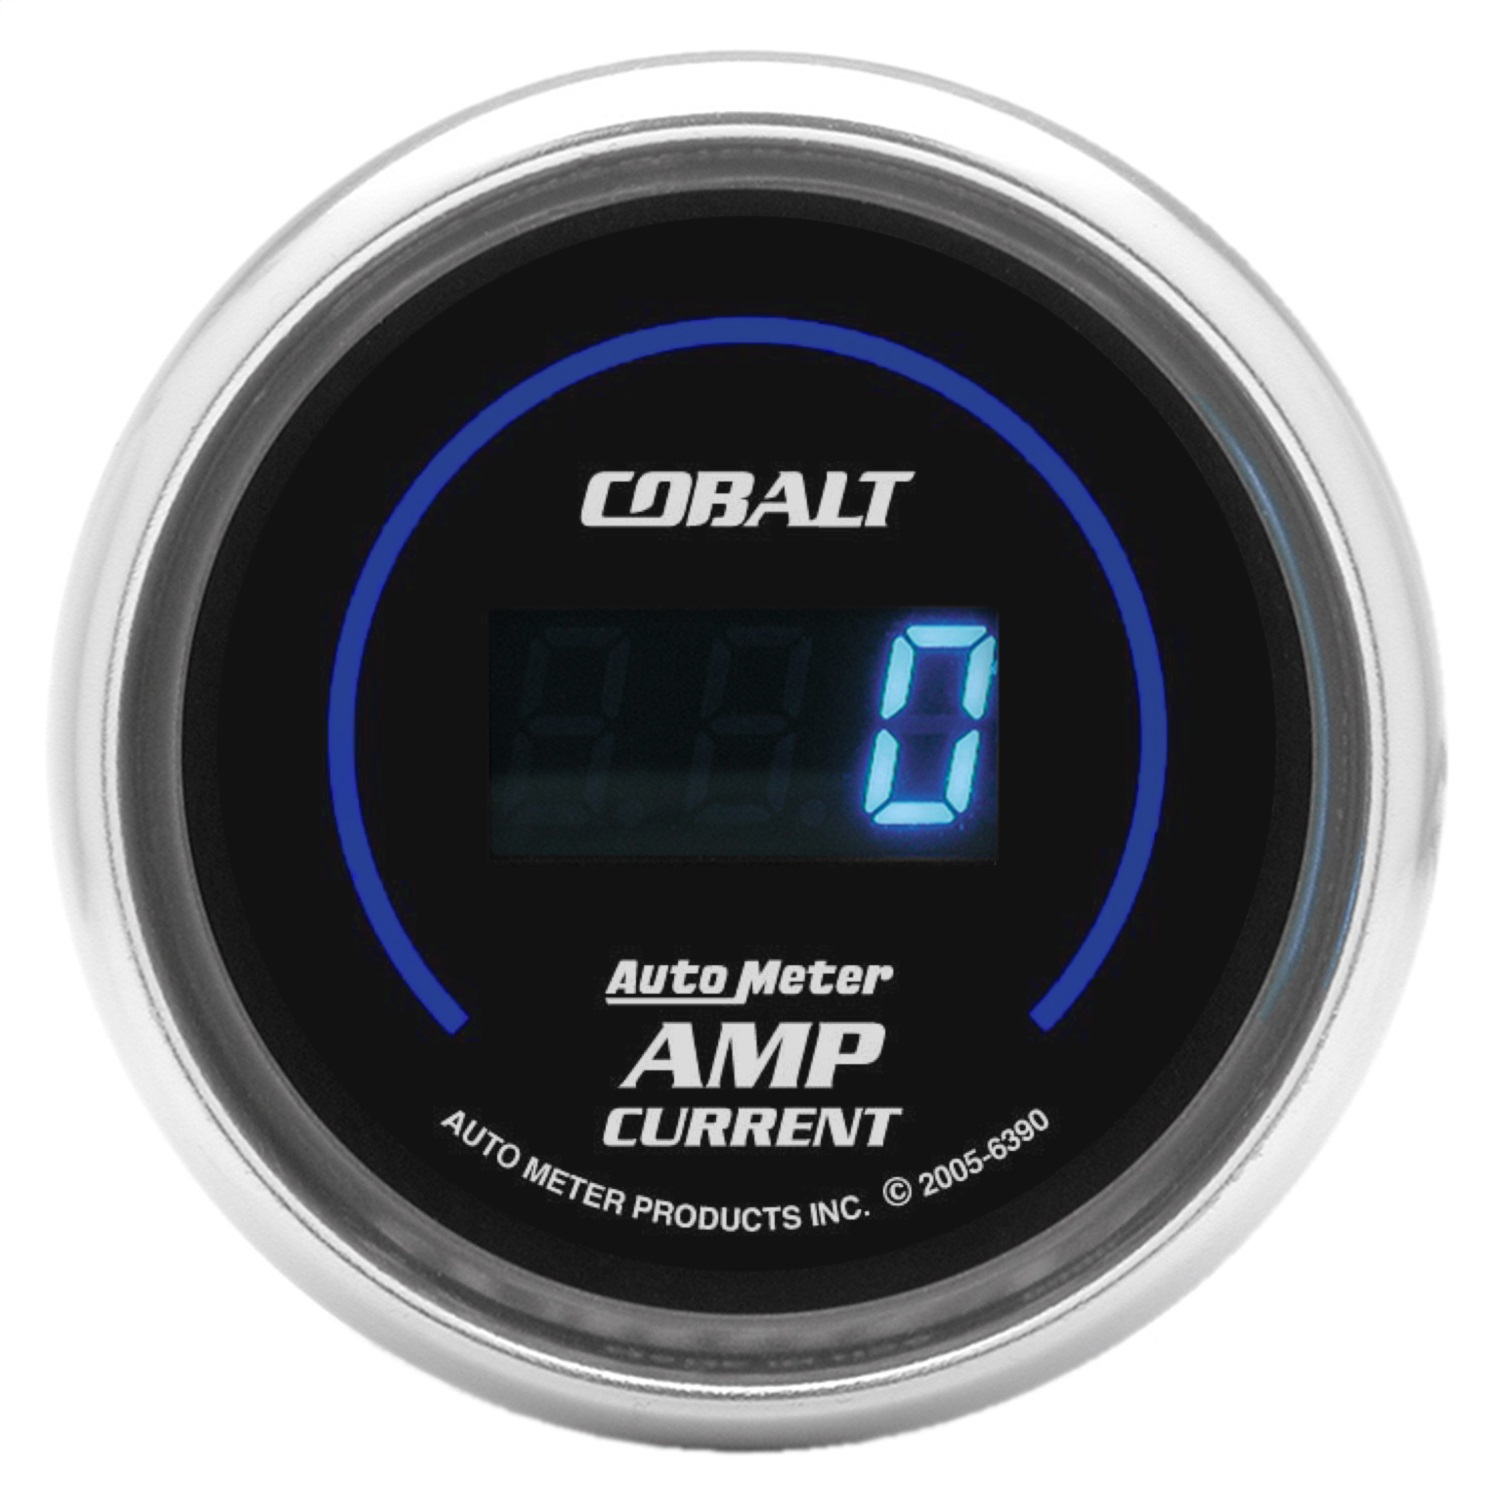 Auto Meter Auto Meter 6390 Cobalt; Digital Ampmeter Gauge